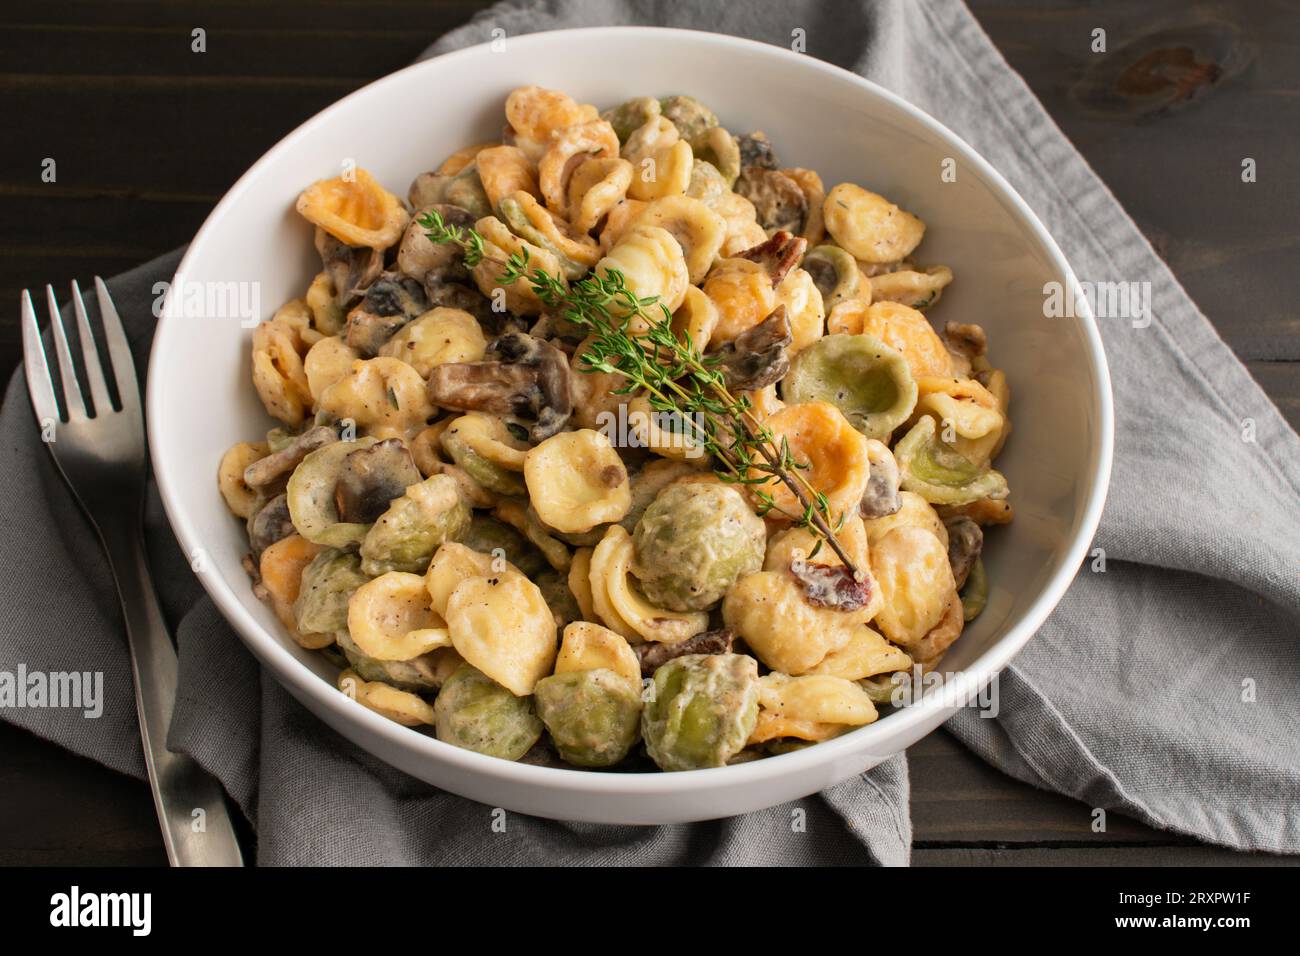 Orecchiette mit Pilz-Thymian-Sauce in einer Pasta-Schüssel: Nudeln und Pilze in Sahnesauce, serviert in einer großen flachen Schüssel Stockfoto